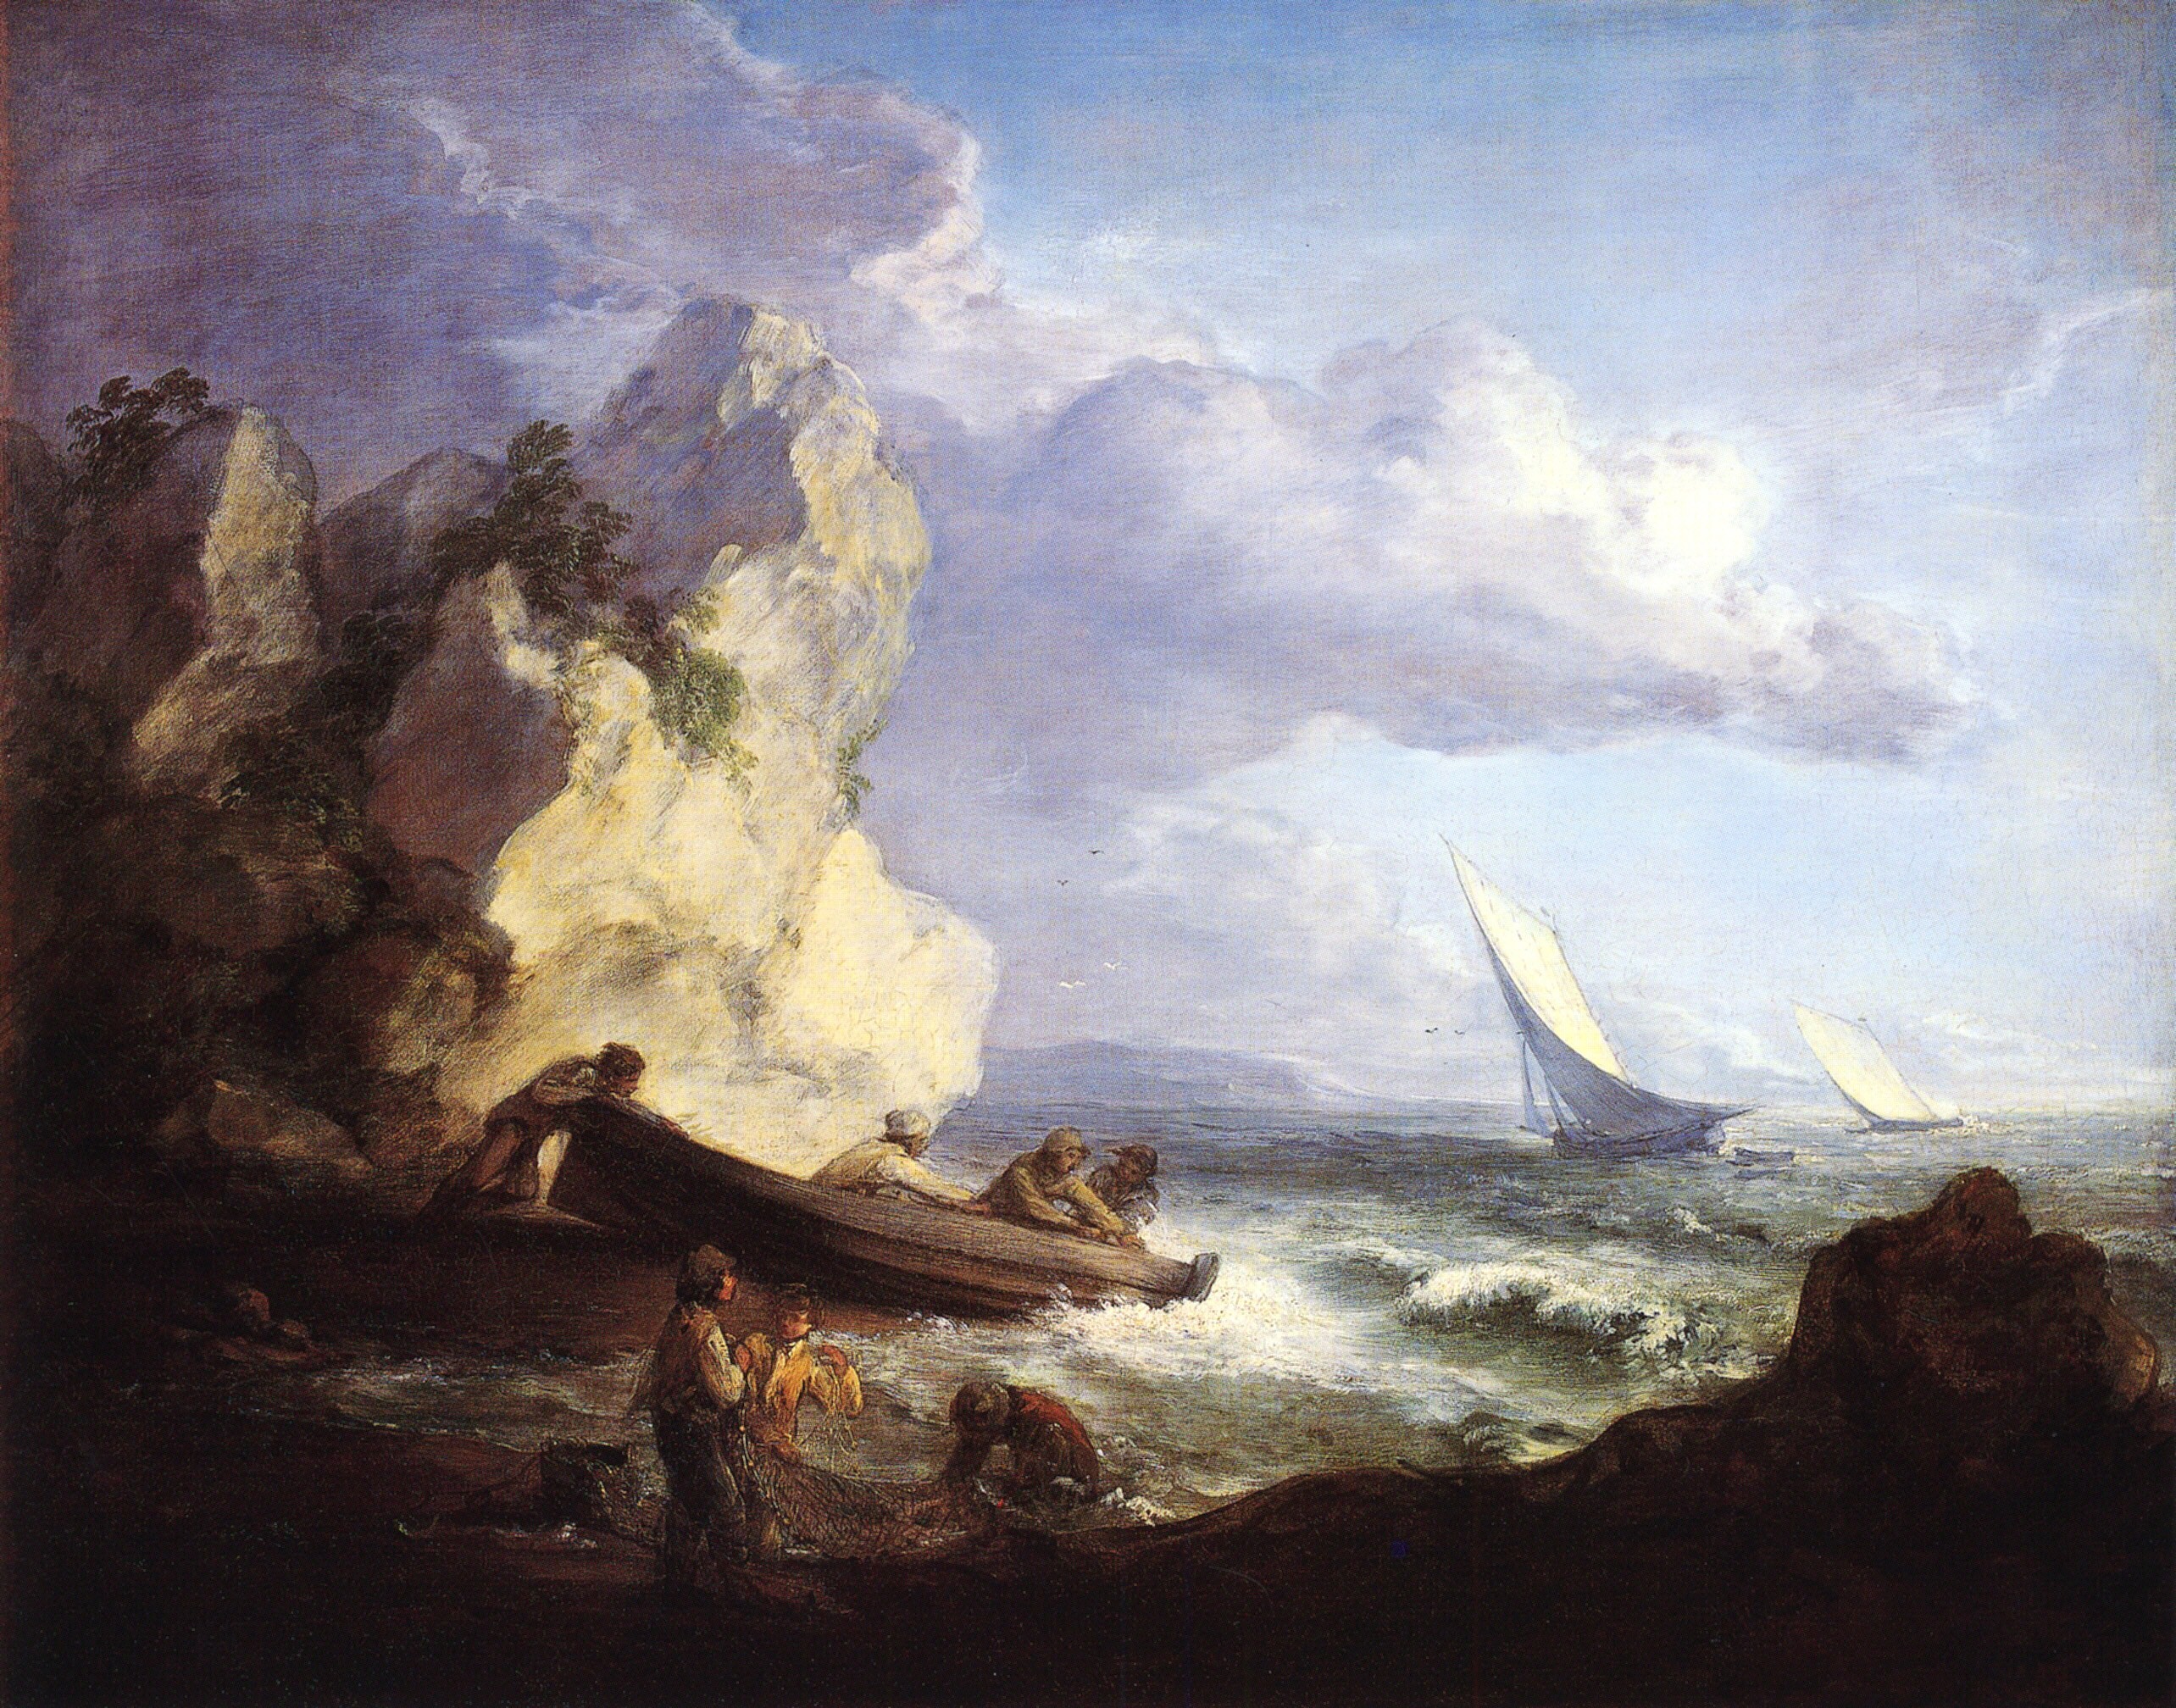 渔夫的海岸 by 托马斯 庚斯博罗 - 1782 - - 